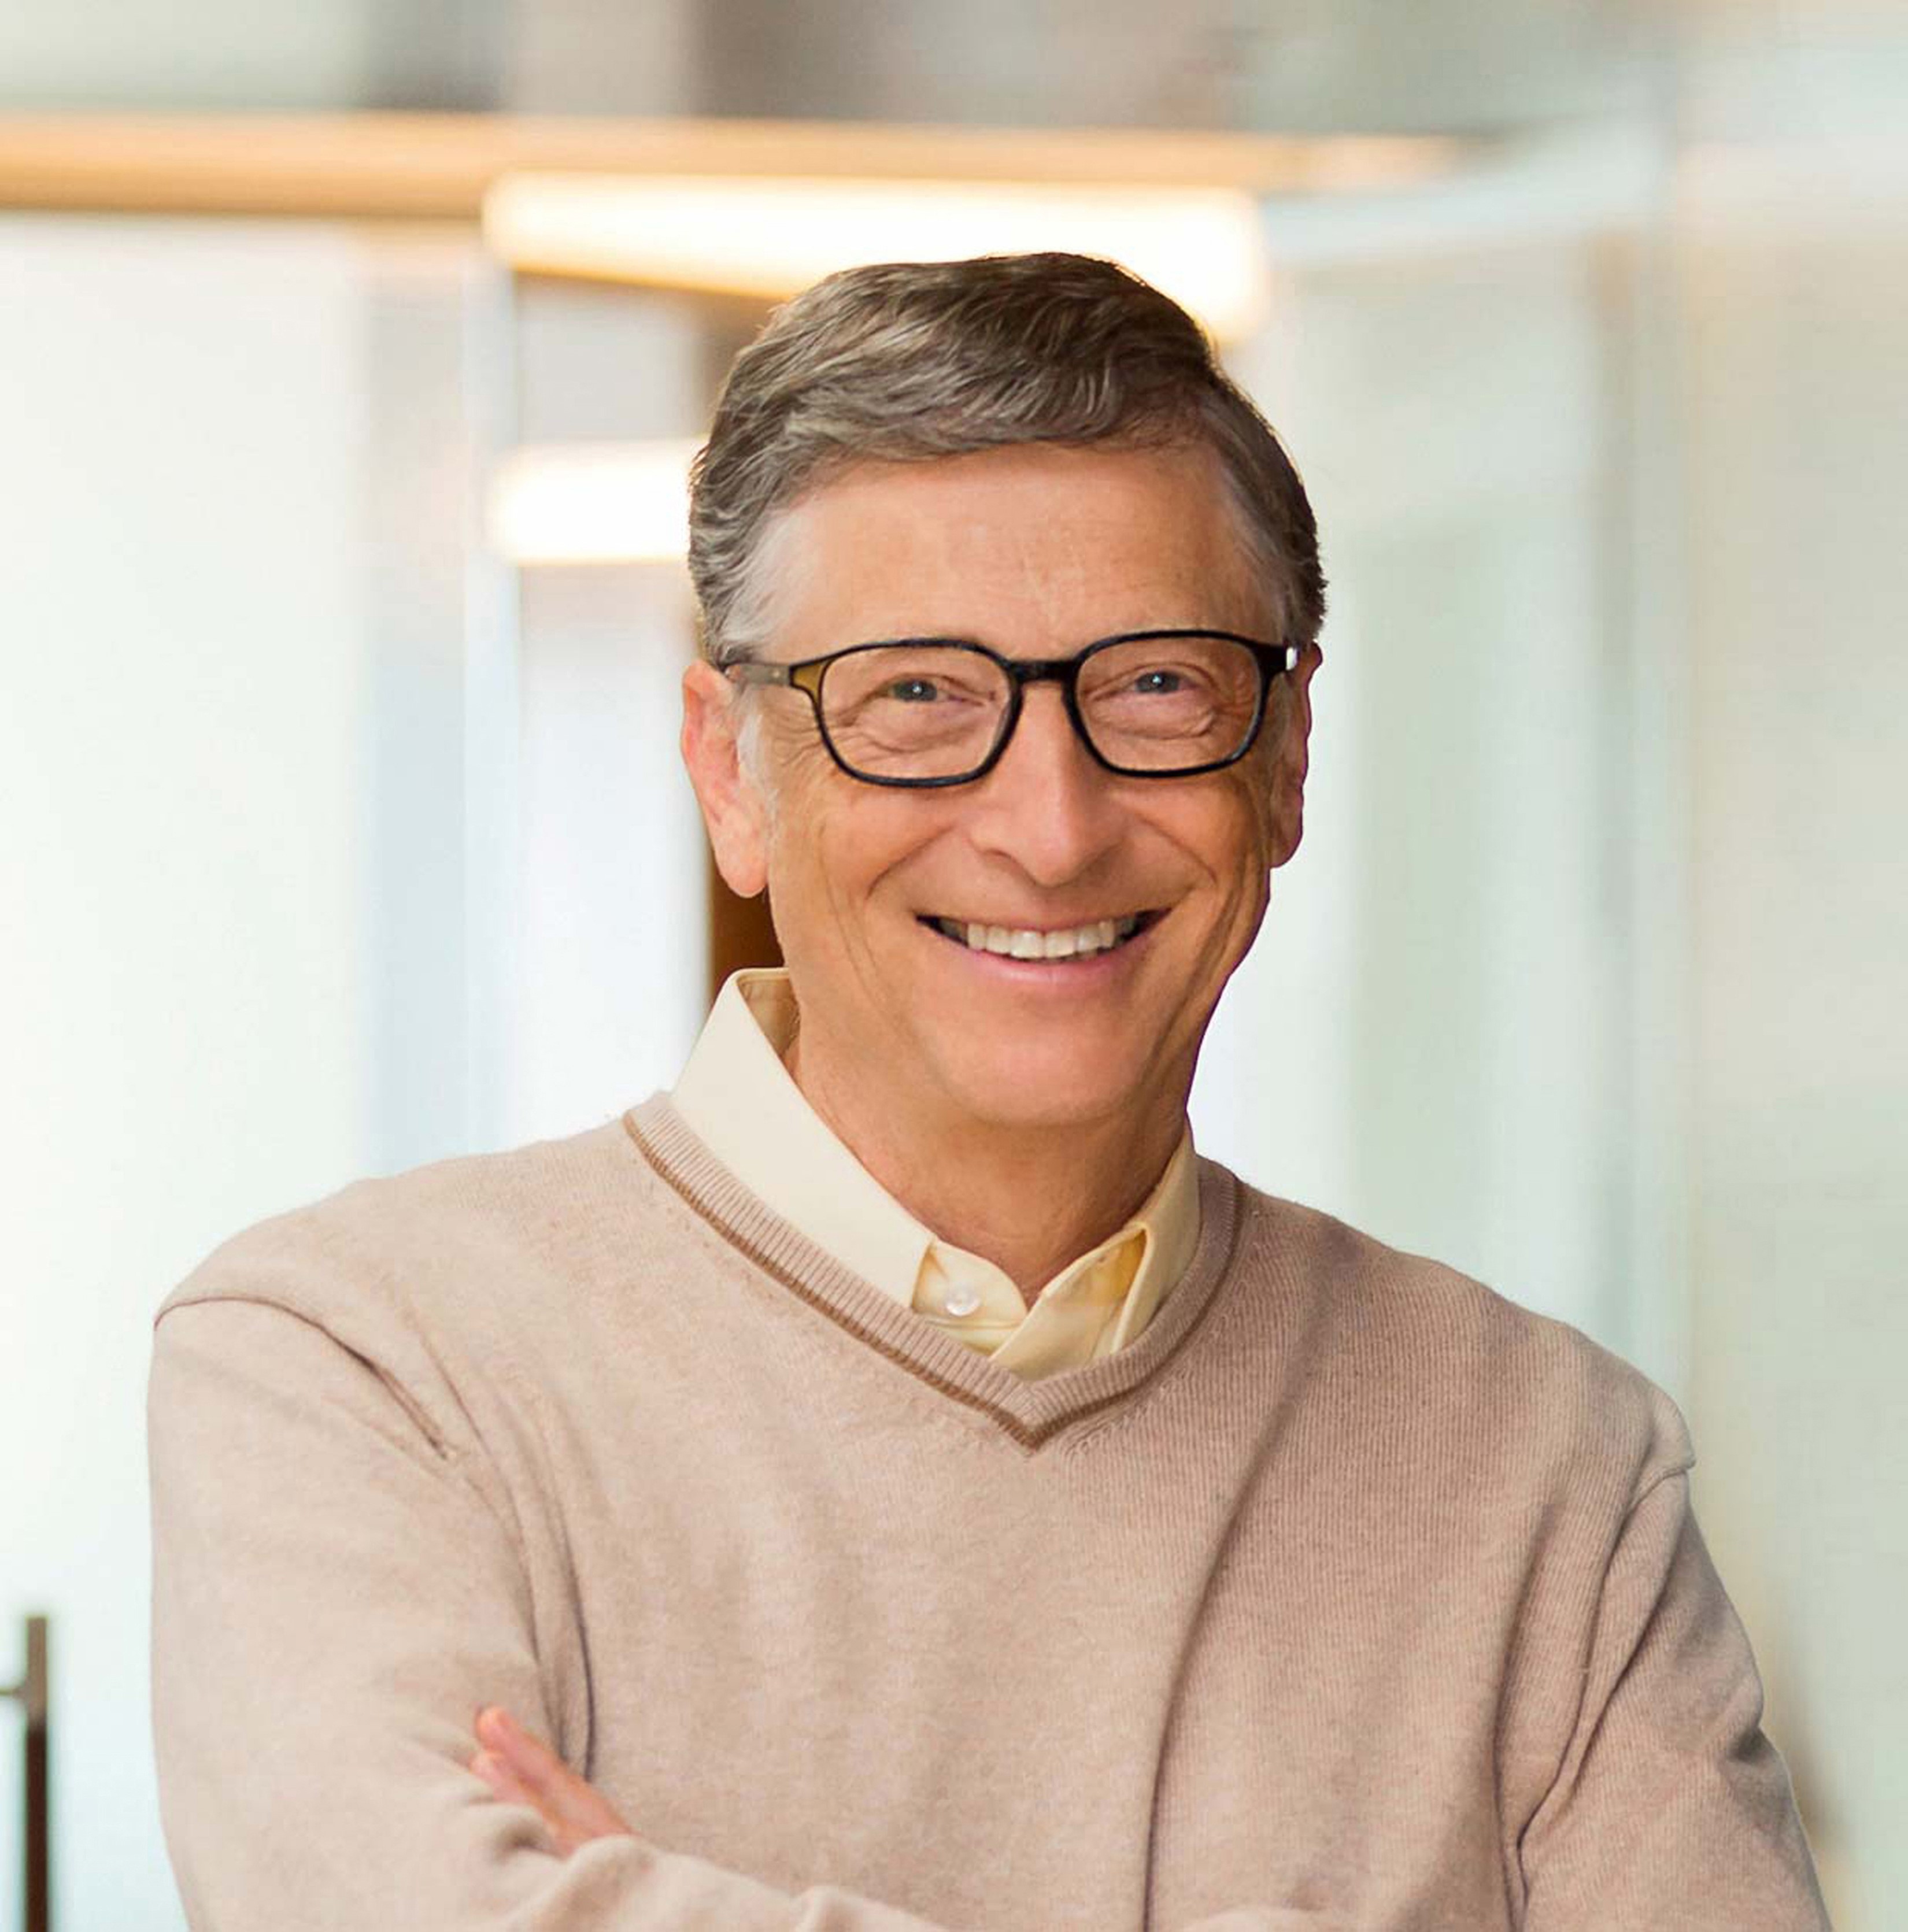 Bill Gates reveló cuál es el celular que usa y no es el de Microsoft